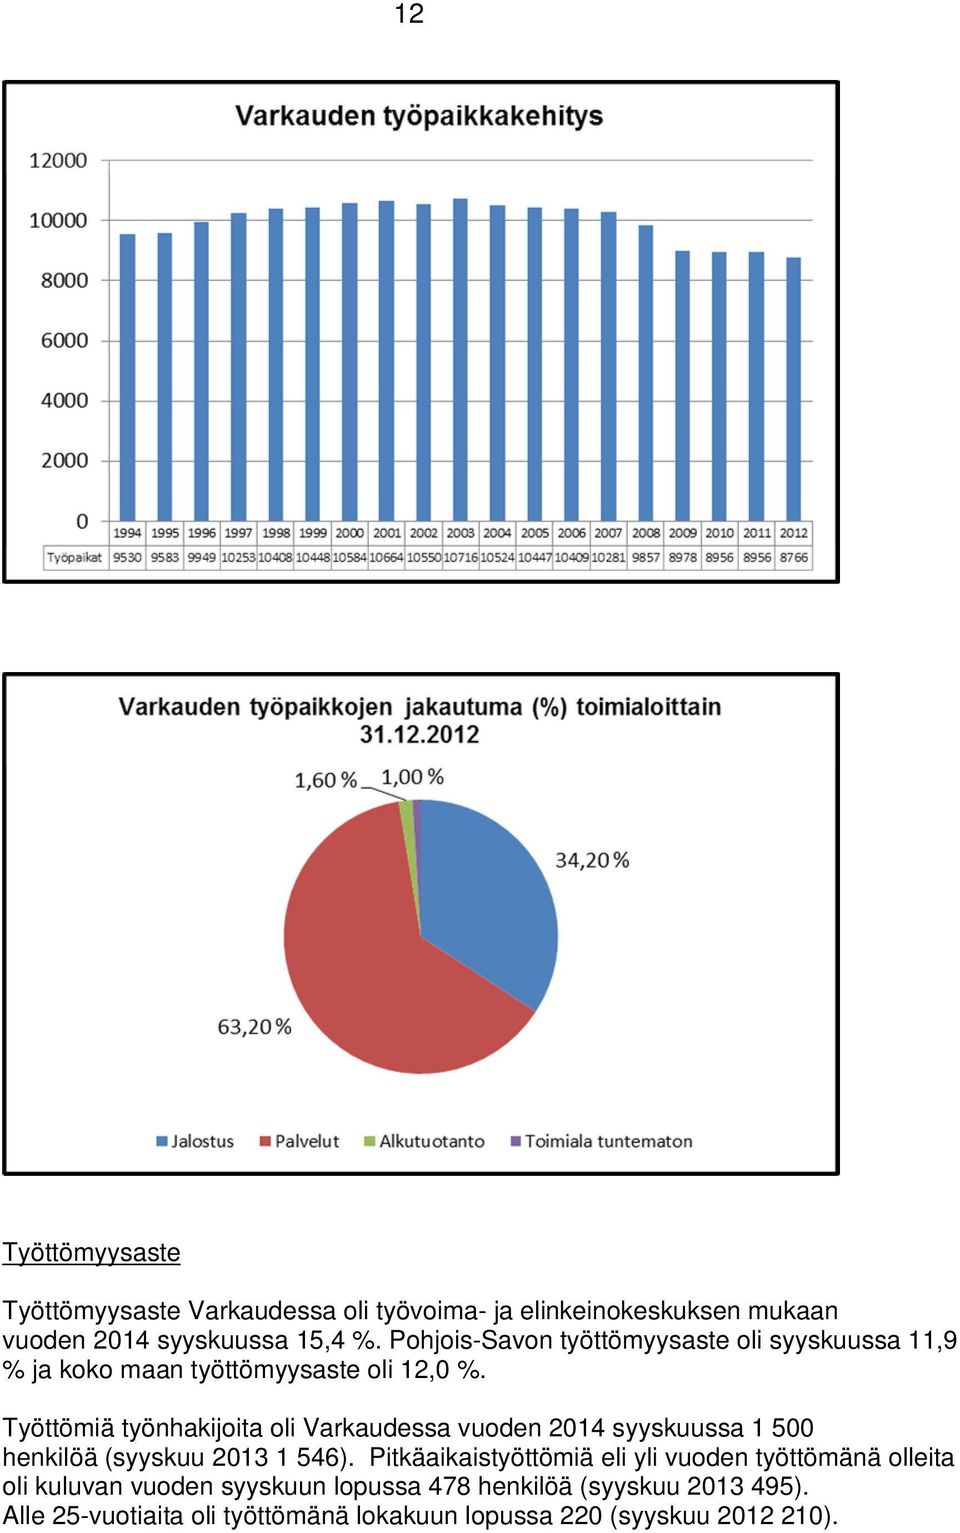 Työttömiä työnhakijoita oli Varkaudessa vuoden 2014 syyskuussa 1 500 henkilöä (syyskuu 2013 1 546).